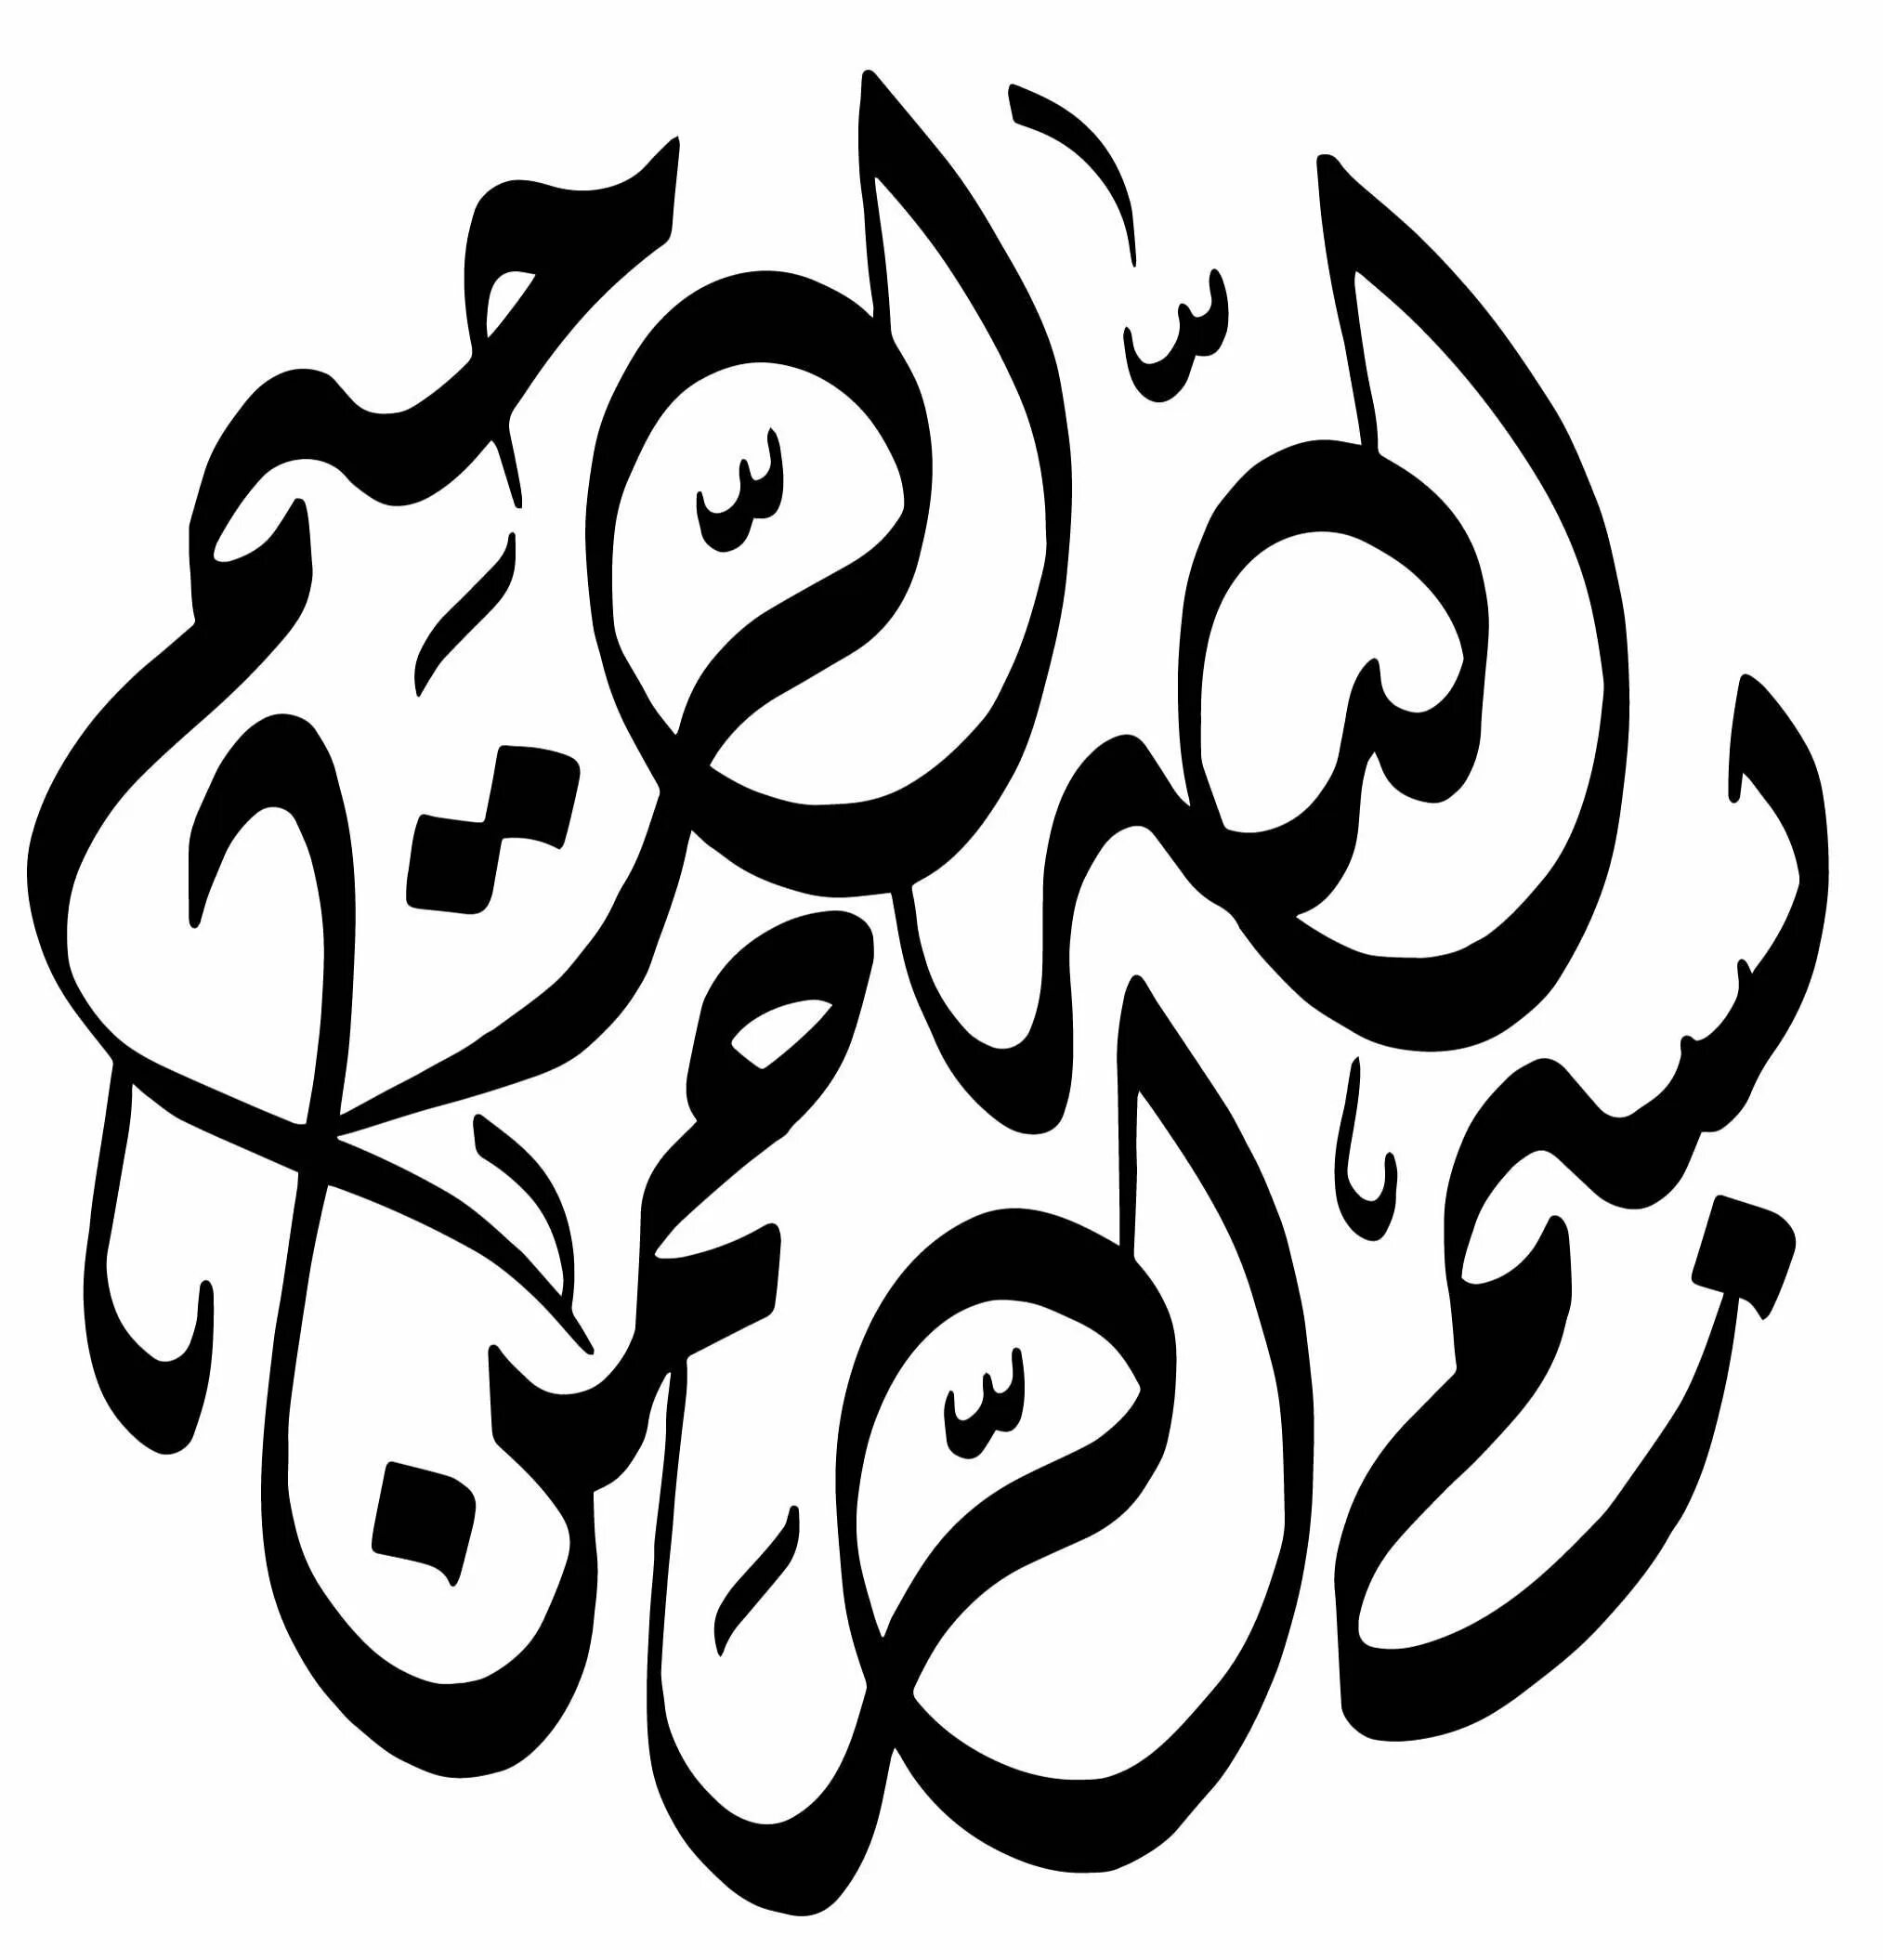 Арабская вязь басмала. Басмала на арабском каллиграфия. Арабская каллиграфия Bismillah. Каллиграфия Бисмилла на арабском.